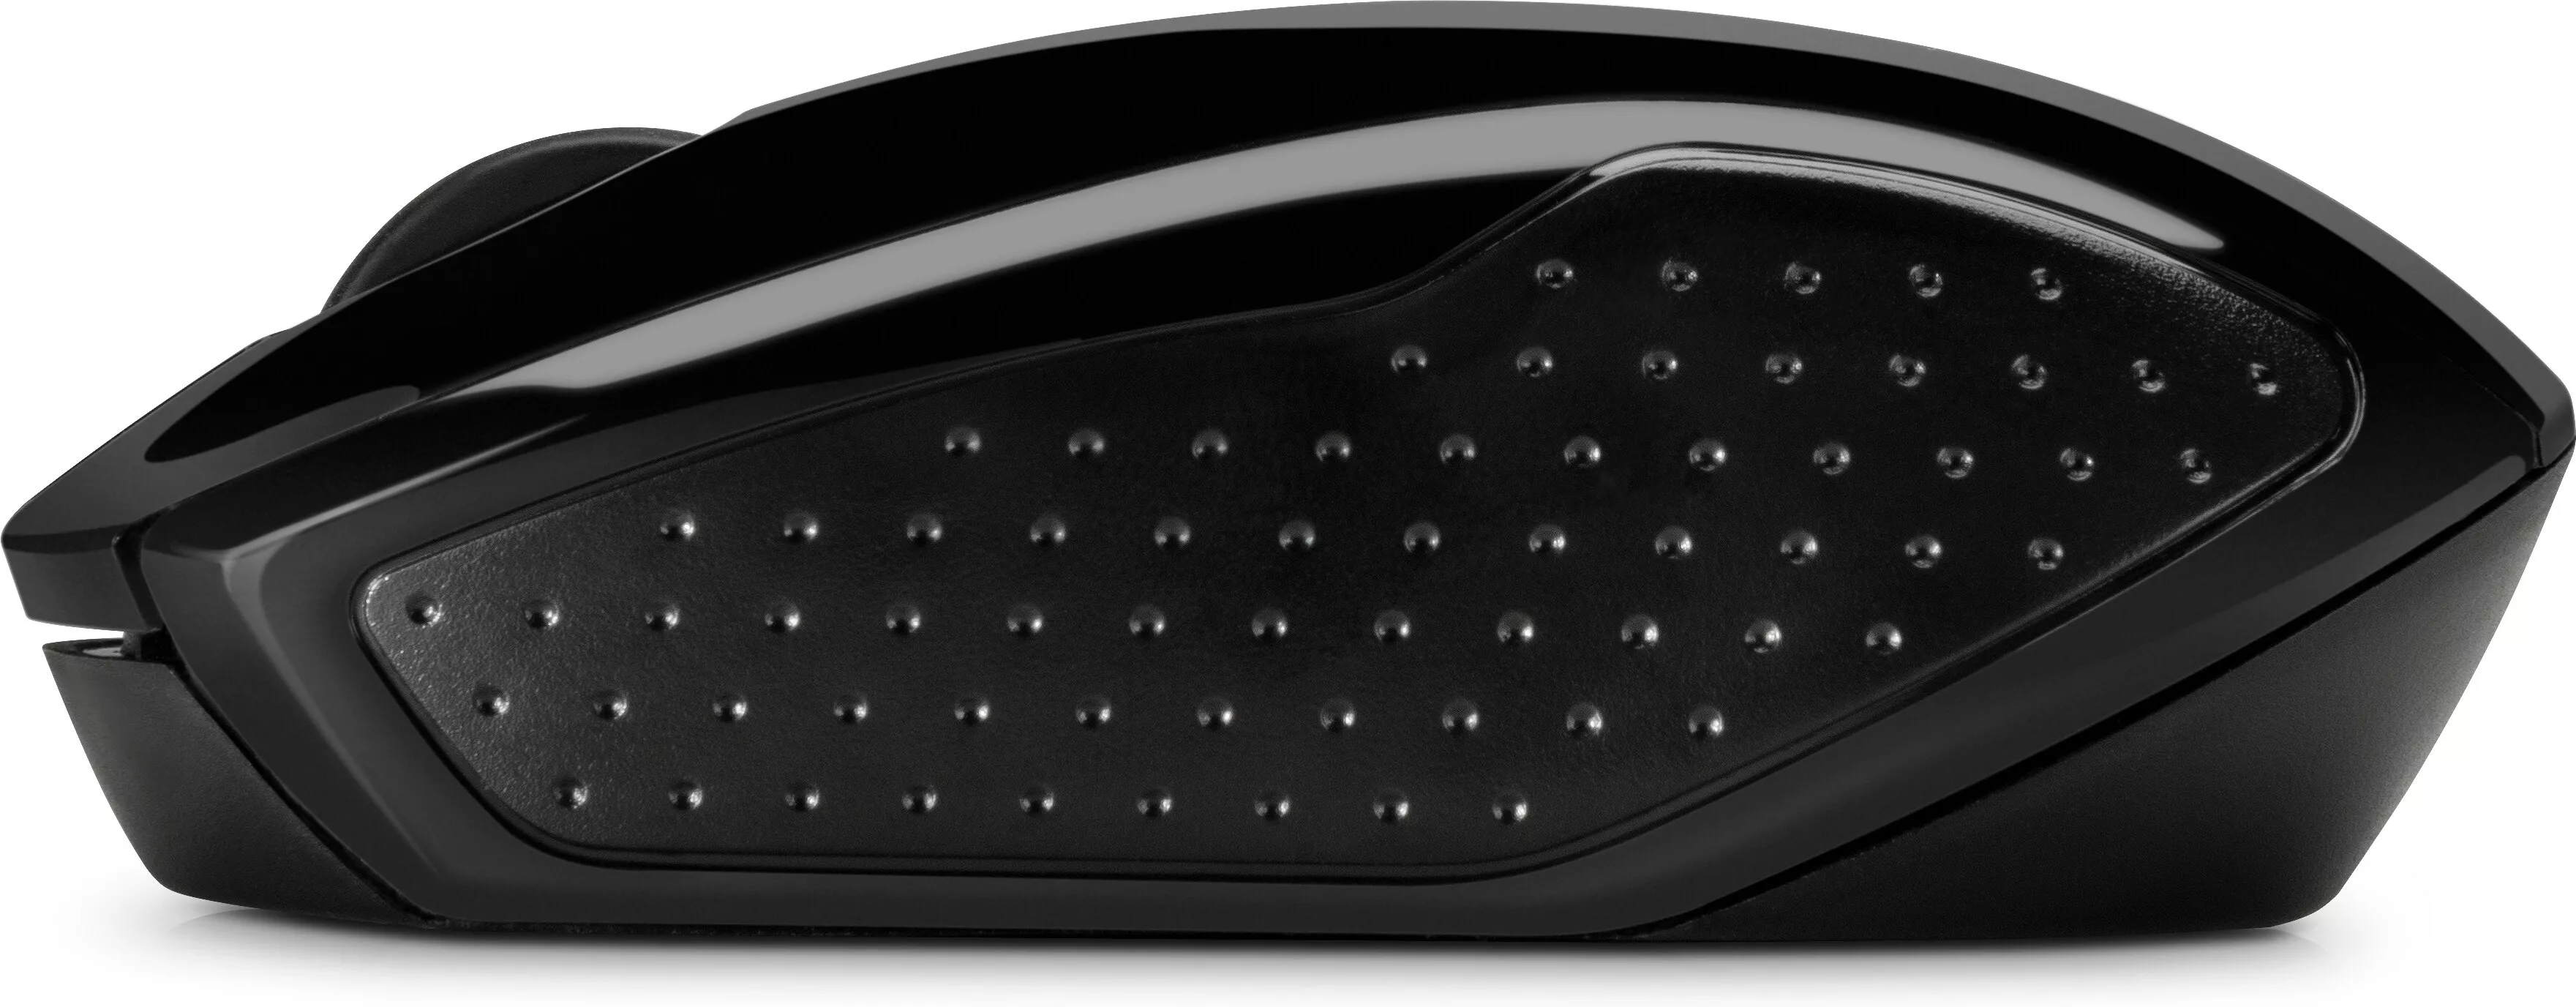 Vente HP 200 Black Wireless Mouse HP au meilleur prix - visuel 6